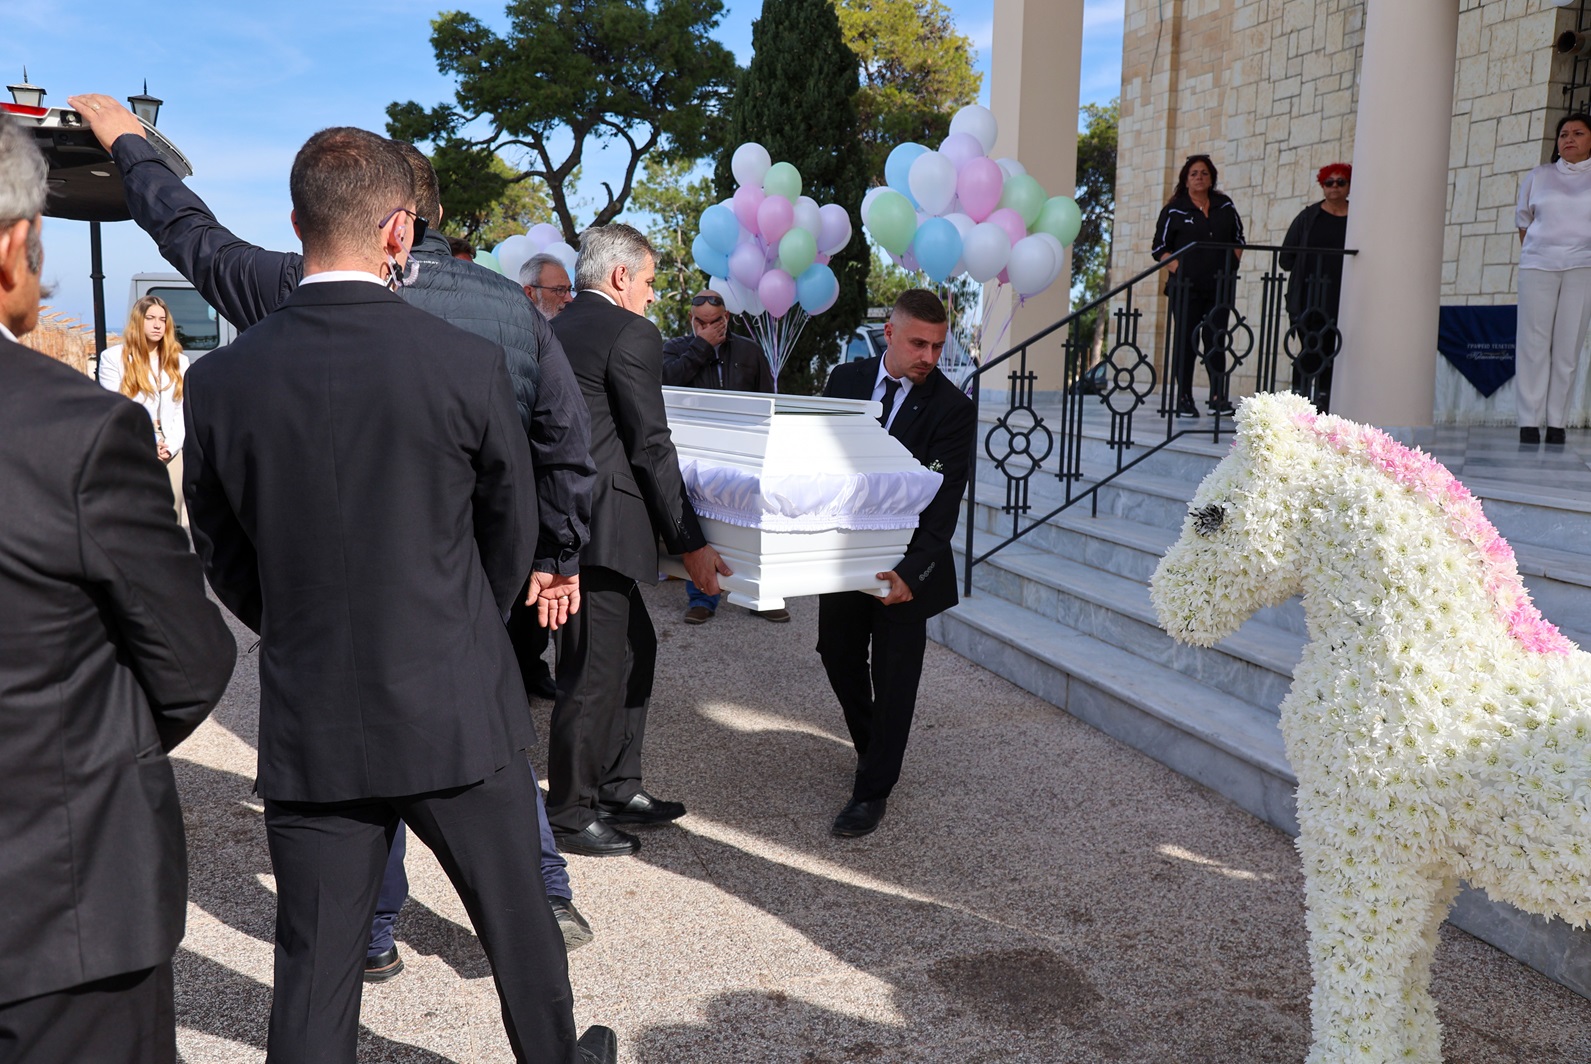 Ραφαέλα Πιτσικάλη: Σε κλίμα οδύνης η κηδεία της 21χρονης που έγινε σύμβολο δύναμης και αισιοδοξίας